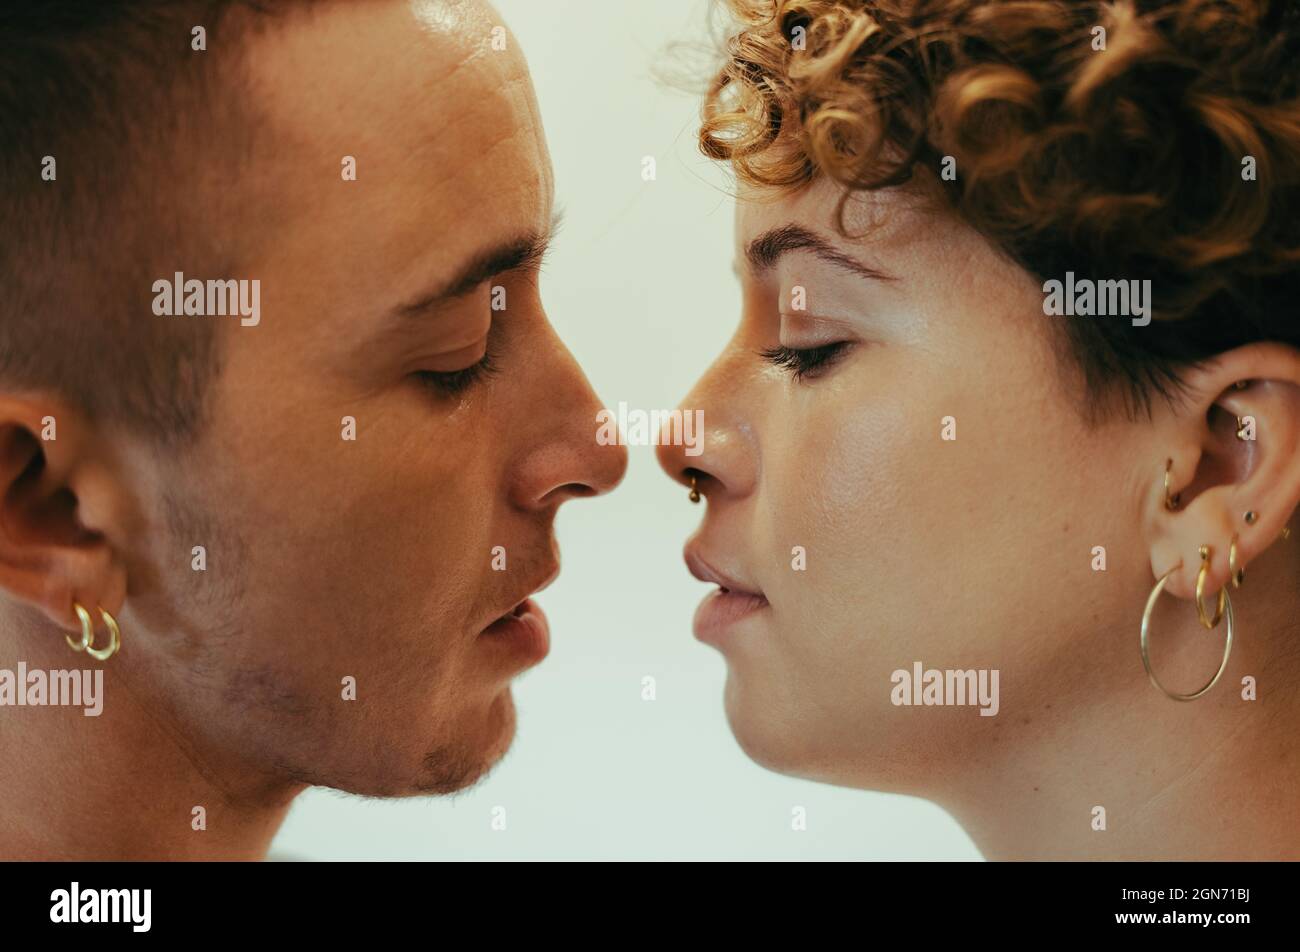 Junges Paar, das sich küsst. Liebevolles junges queeres Paar, das mit geschlossenen Augen dicht beieinander steht. Junge LGBTQ+ Paare teilen sich eine r Stockfoto